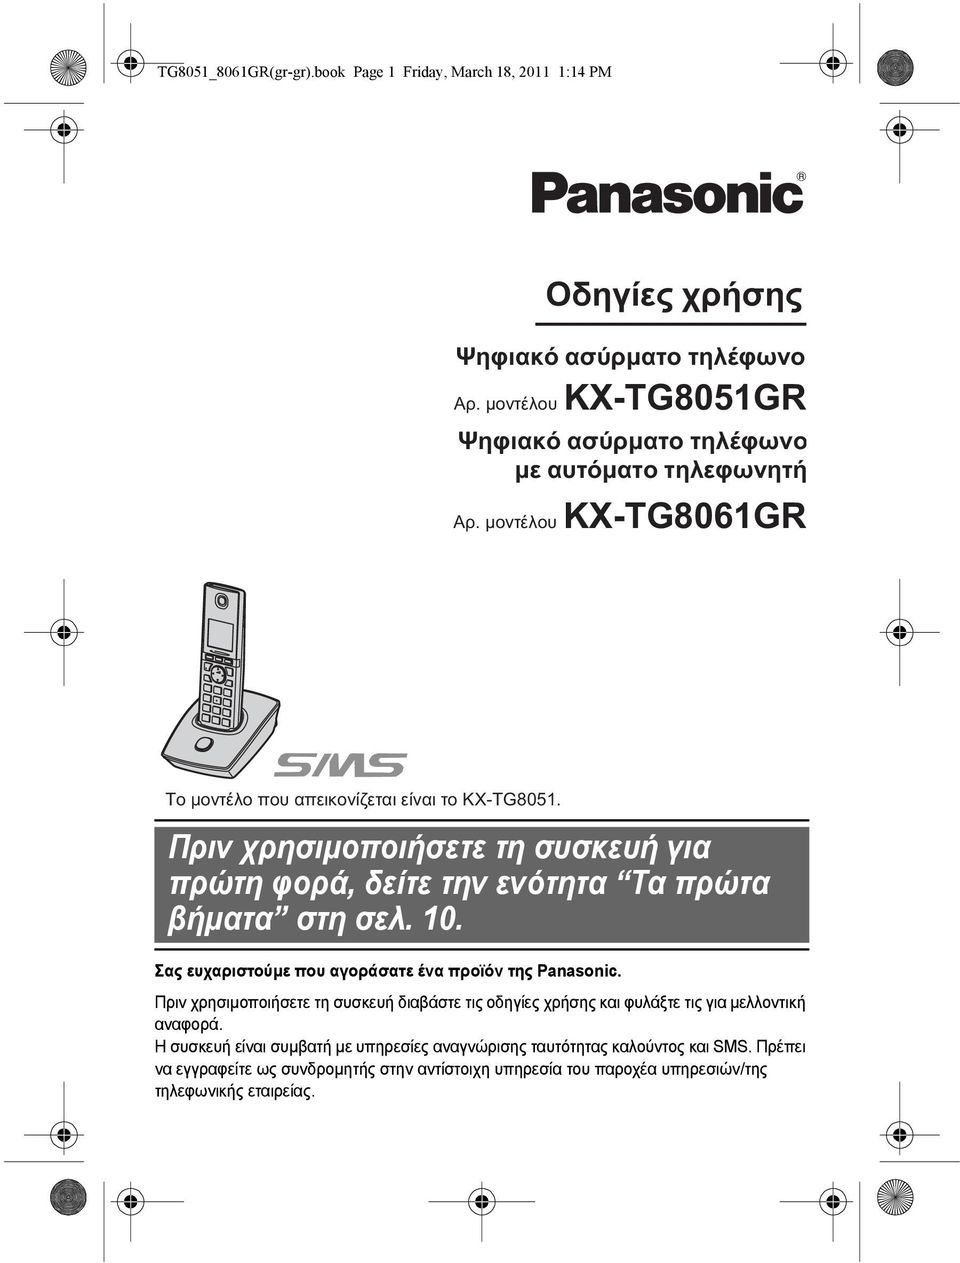 Πριν χρησιµοποιήσετε τη συσκευή για πρώτη φορά, δείτε την ενότητα Τα πρώτα βήµατα στη σελ. 10. Σας ευχαριστούµε που αγοράσατε ένα προϊόν της Panasonic.